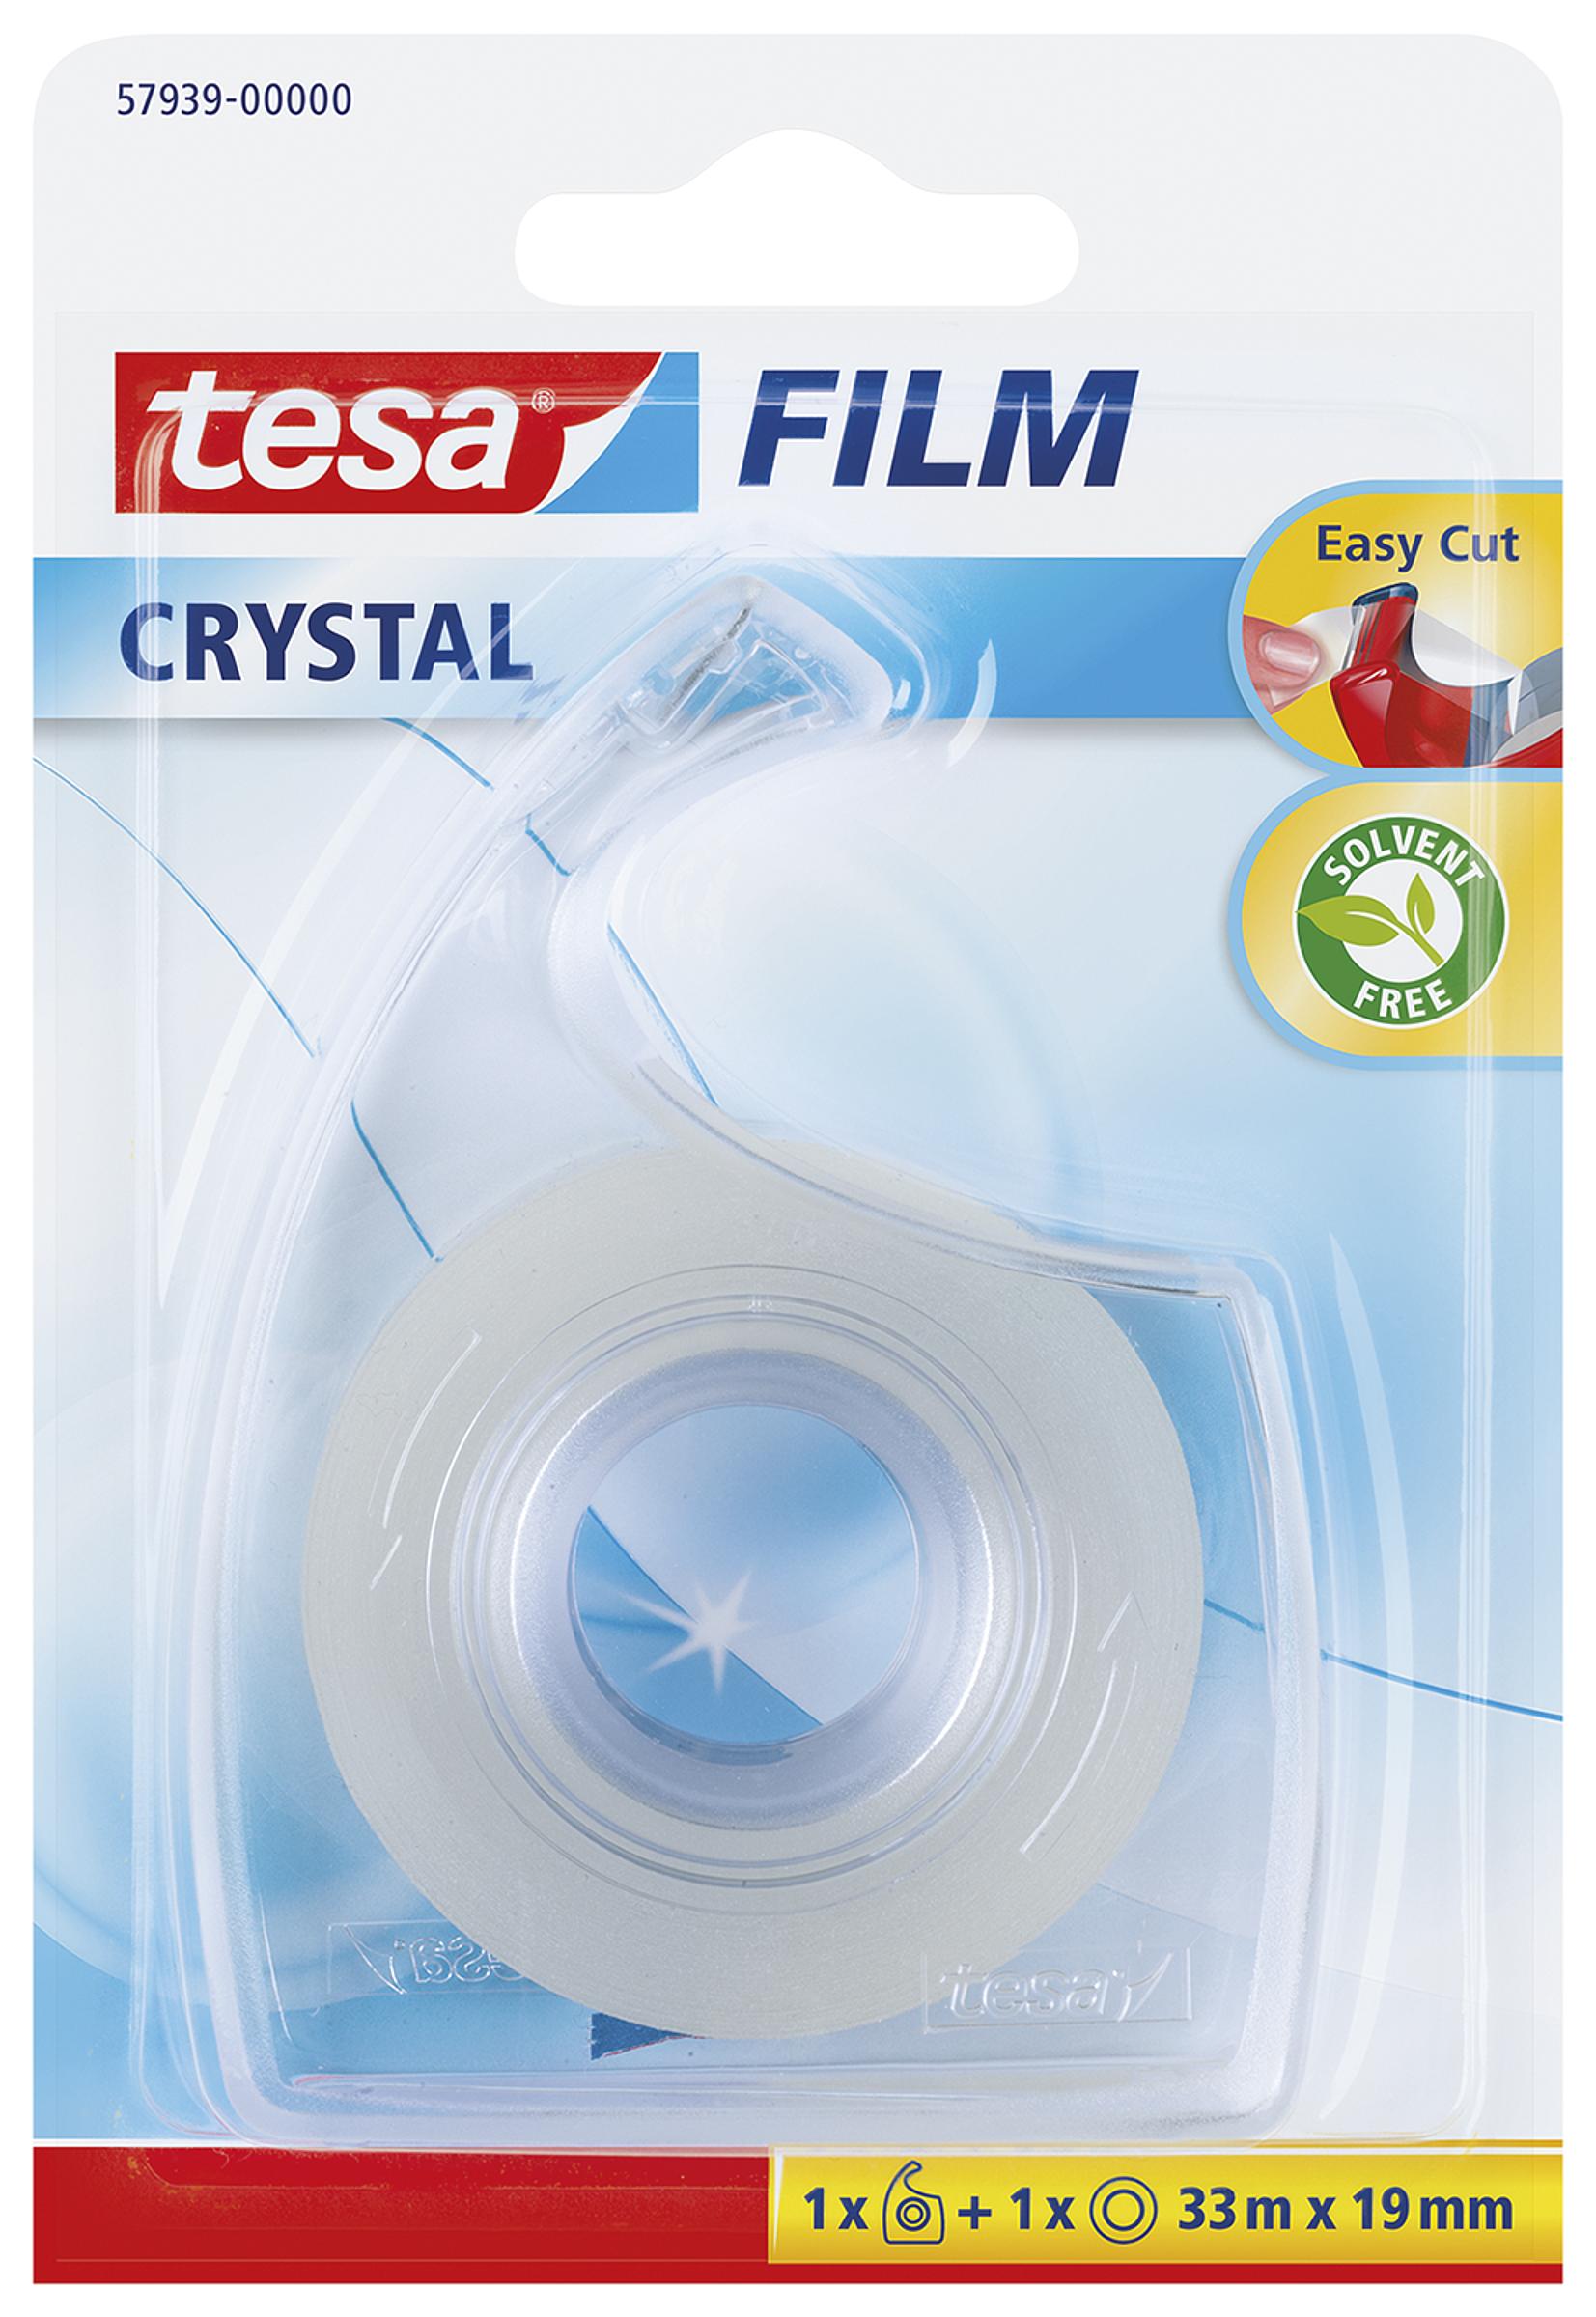 tesafilm® Eco & Crystal - tesa